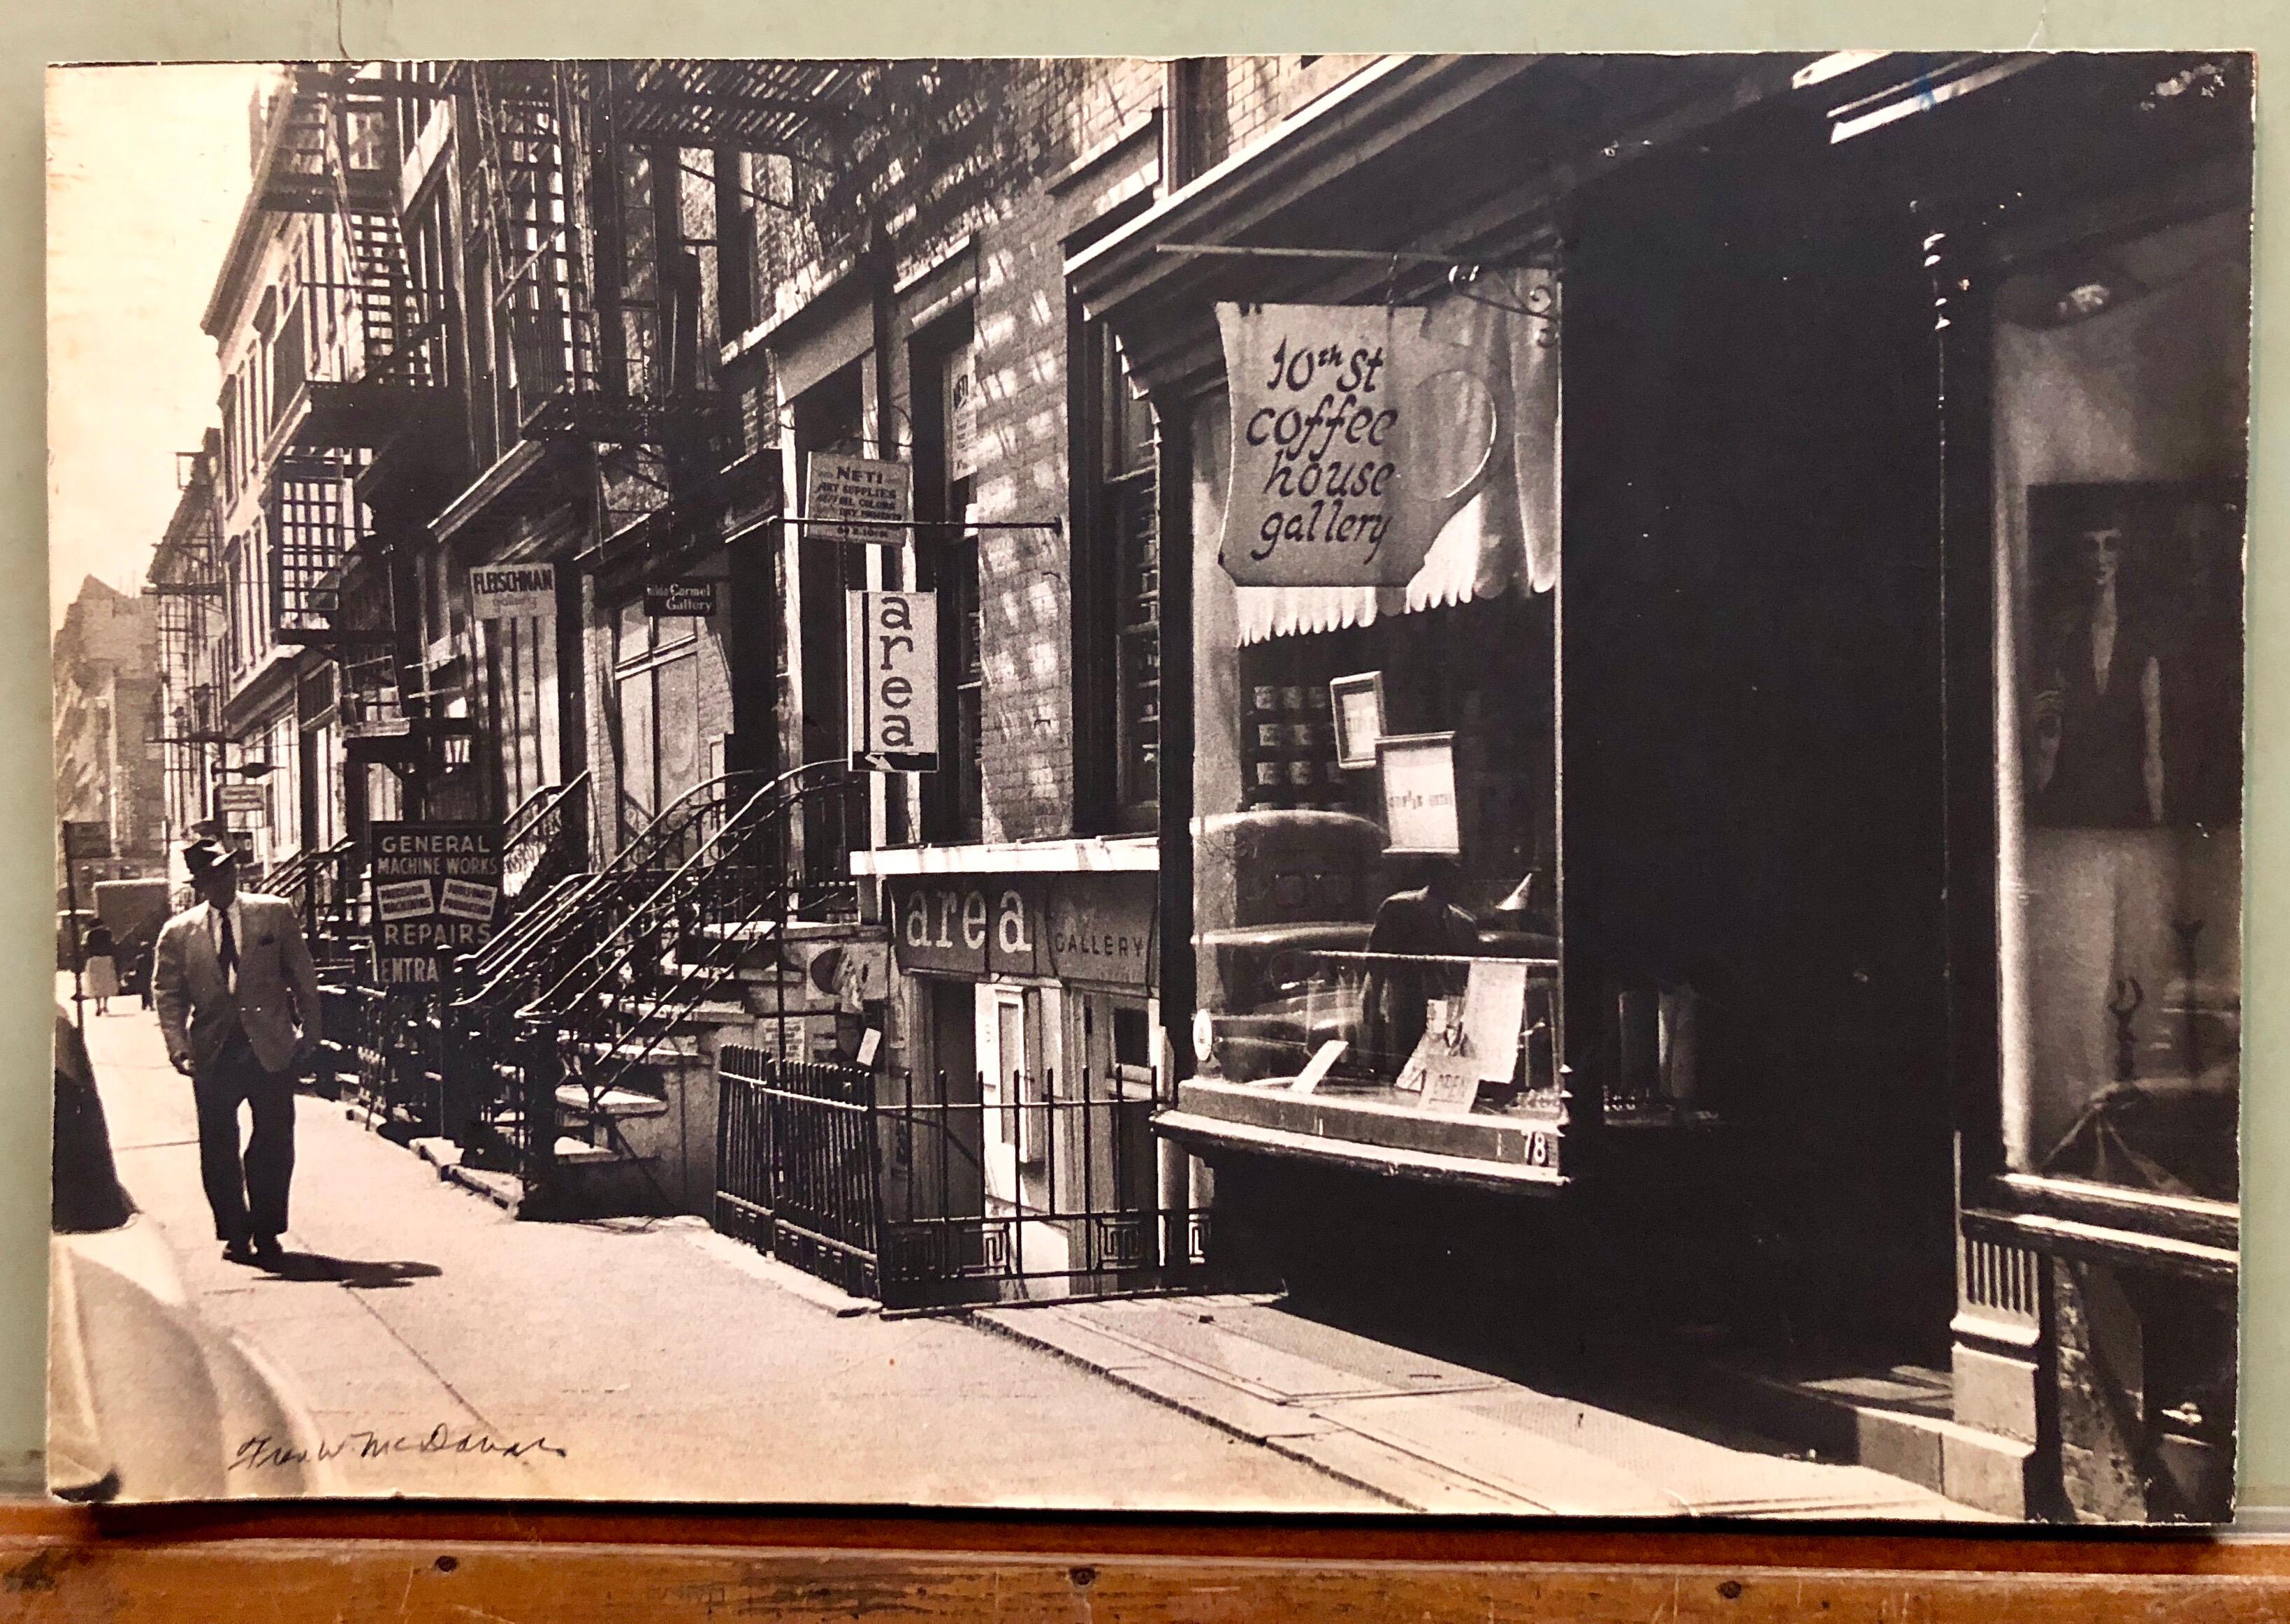 Großer Vintage-Silber-Gelatine-Druck, signierte Fotografie, Greenwich Village, New York – Photograph von Fred McDarrah